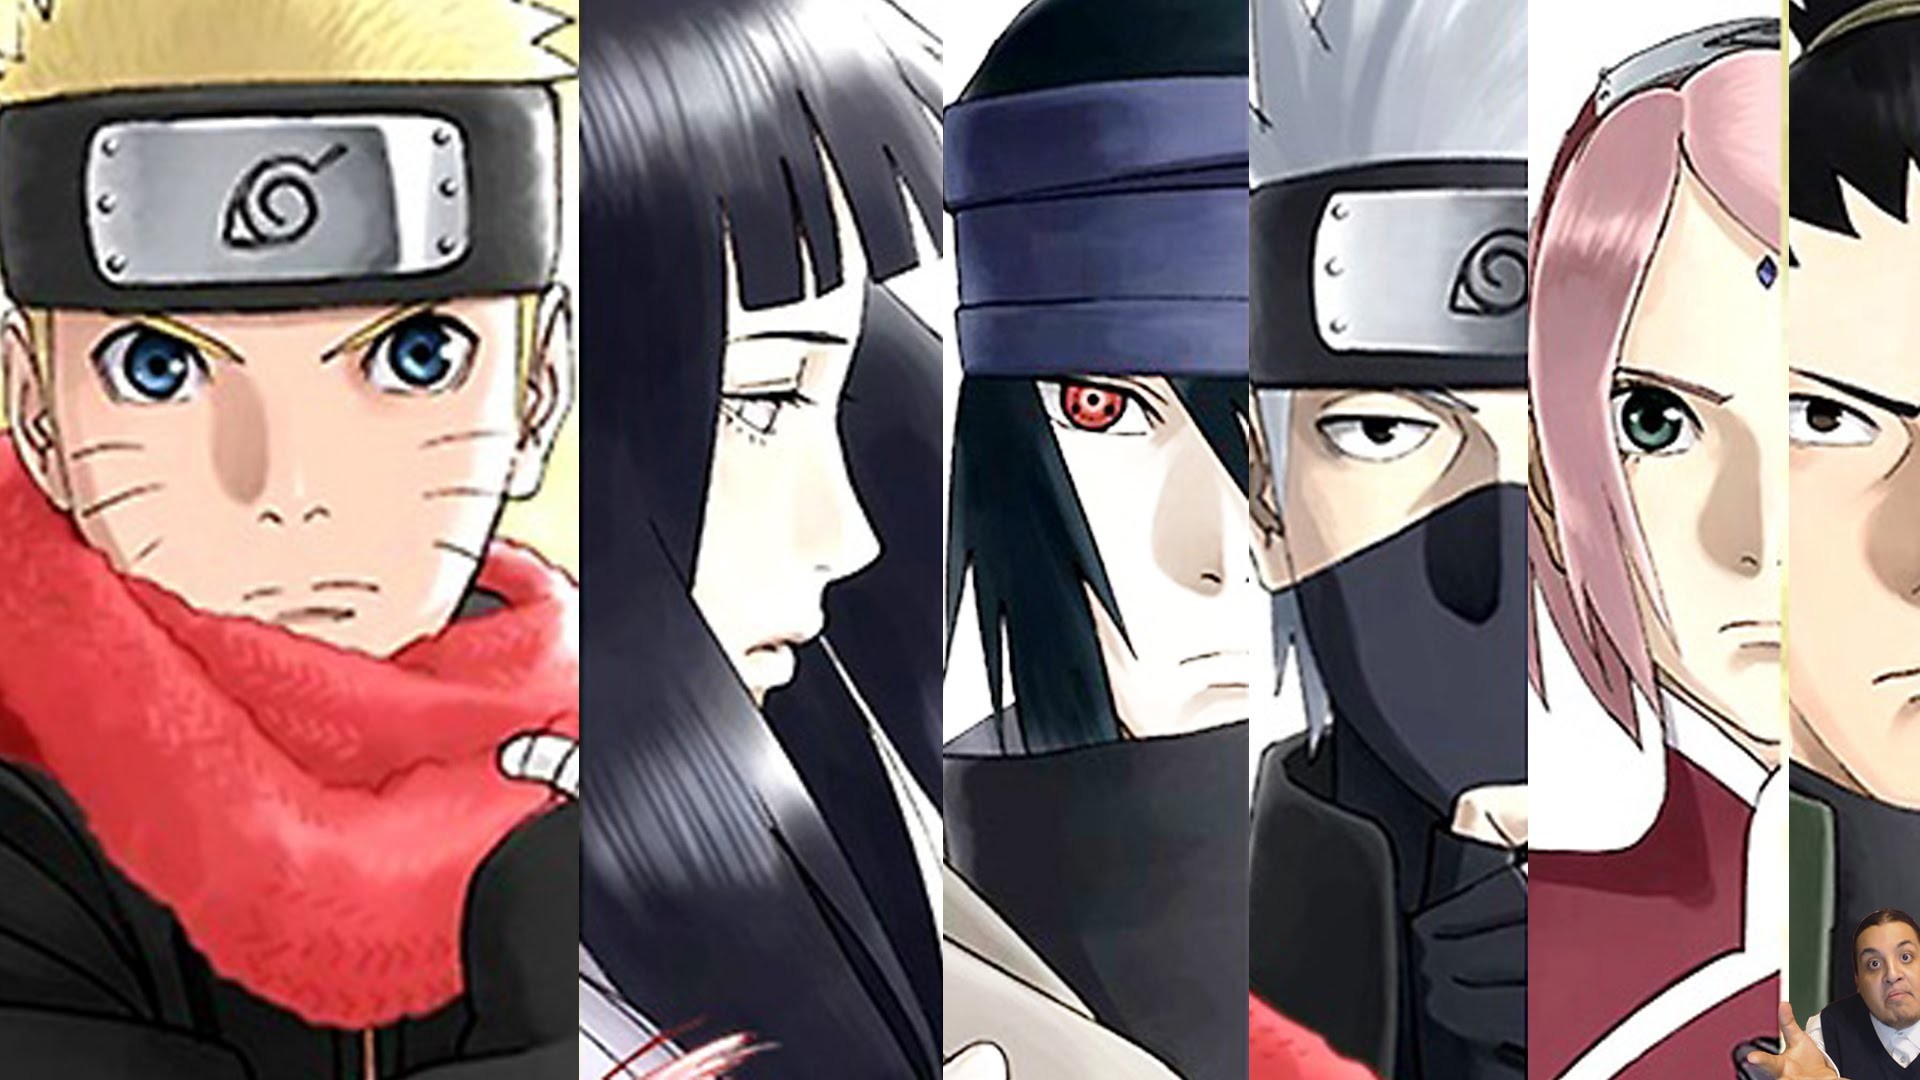 1920x1080 The Last Naruto The Movie: Future/Older Hinata + Sasuke, Sakura, Kakashi,  Sai, Shikamaru -ãã«ã- ã¶Â·ã©ã¹ã - YouTube